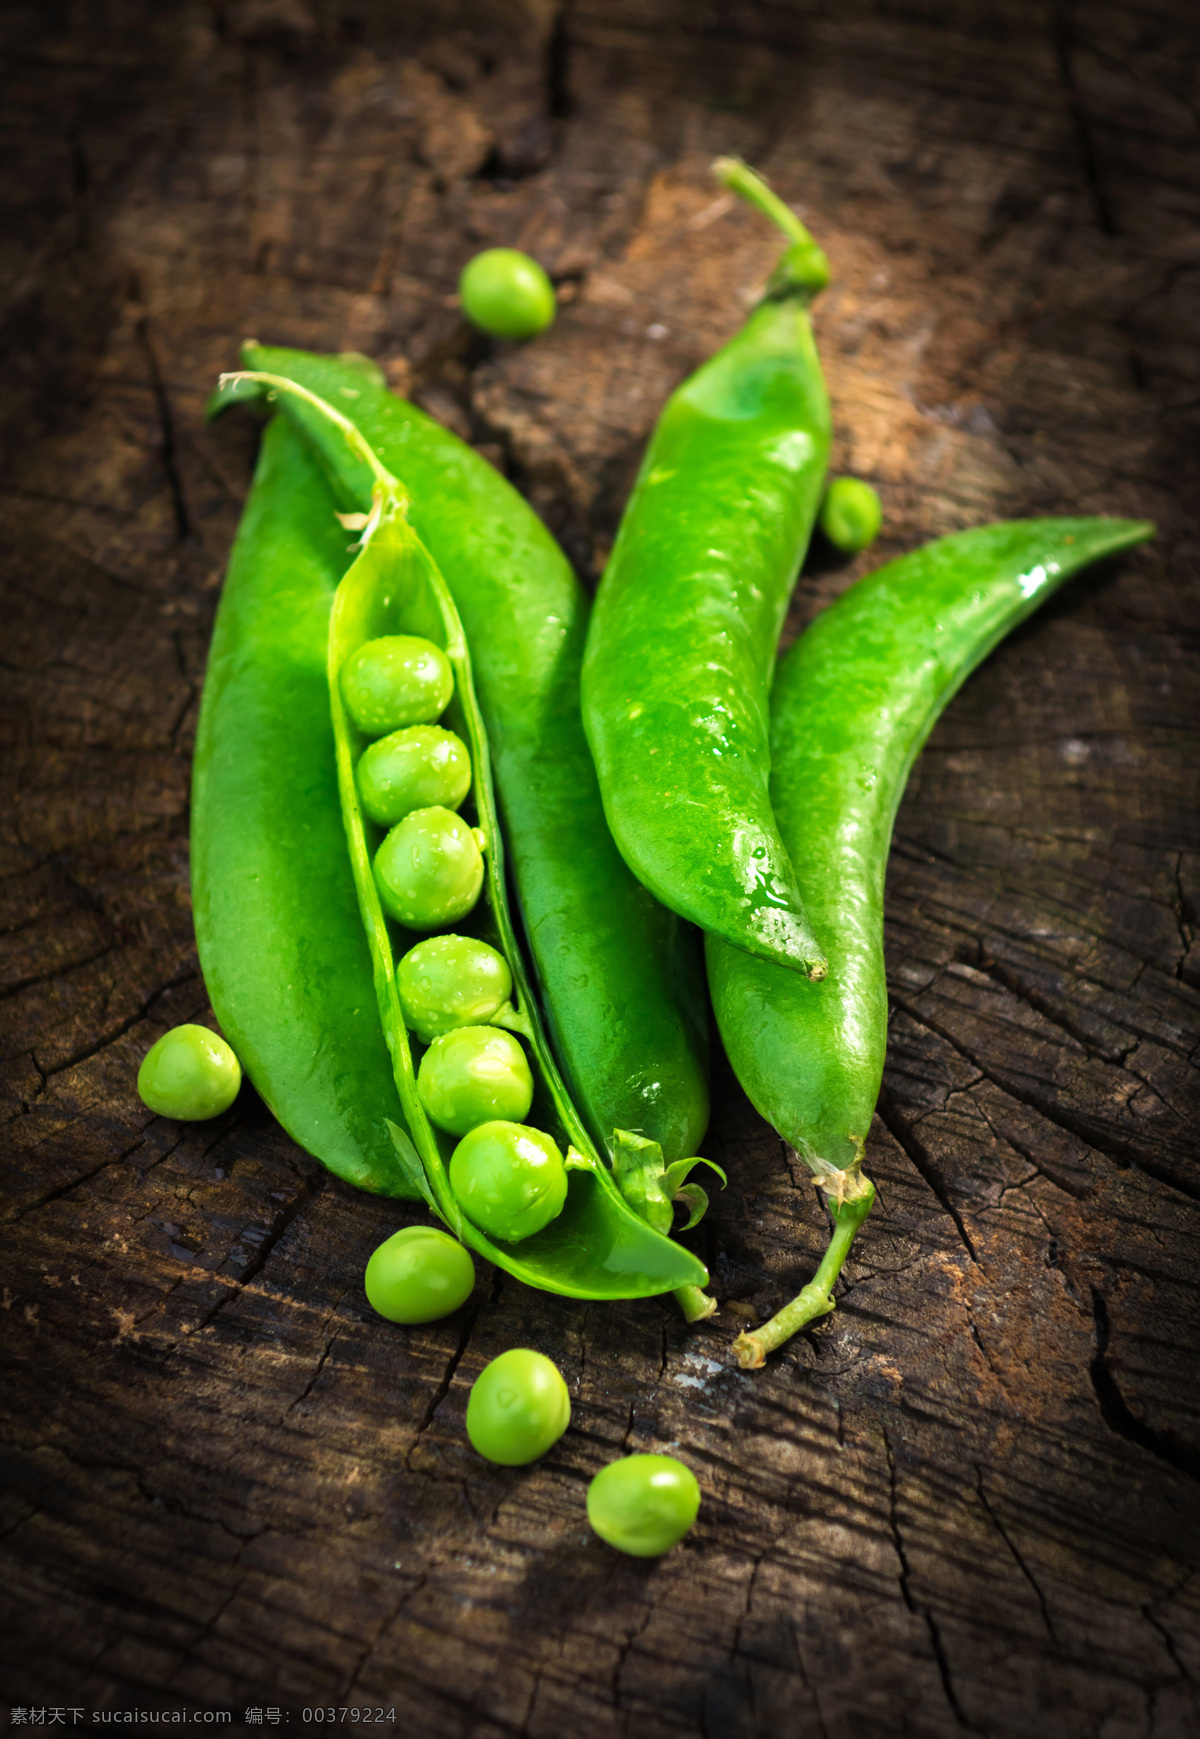 唯美豌豆 唯美 食物 食品 蔬菜 素食 豌豆 豆类 原料 营养 健康 原生态 餐饮美食 食物原料